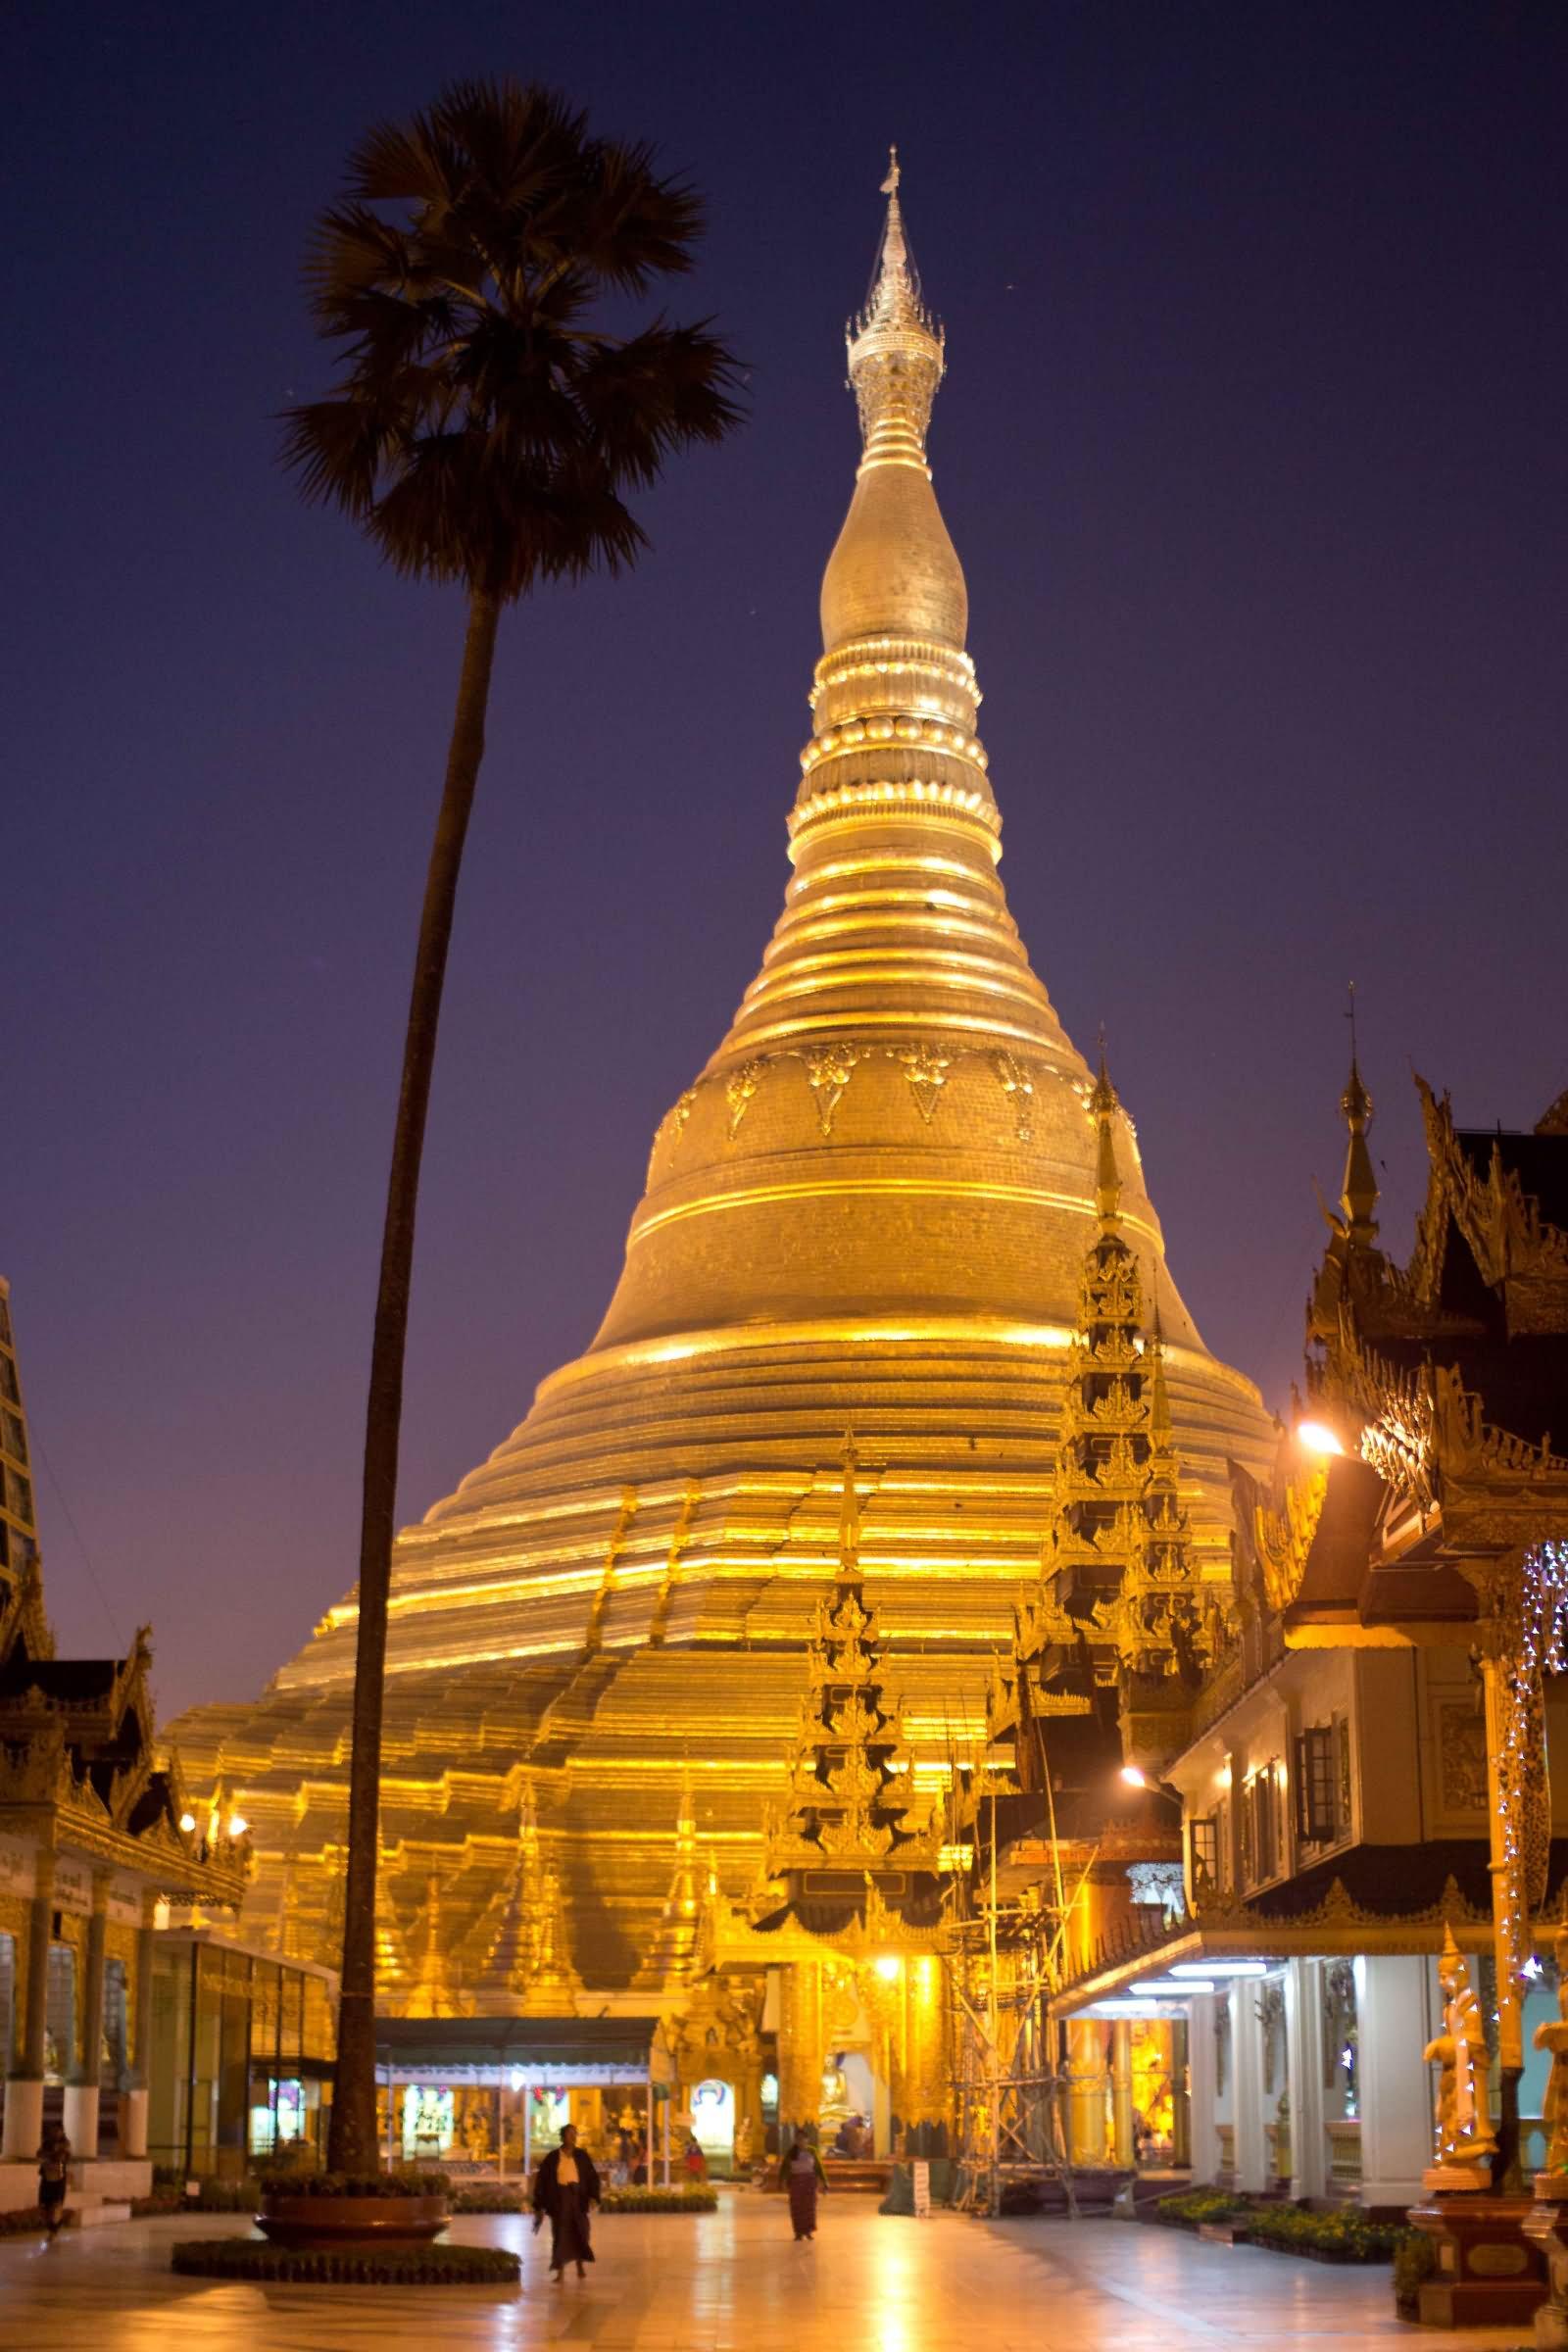 Incredible Night View Image And Photo Of Shwedagon Pagoda, Myanmar